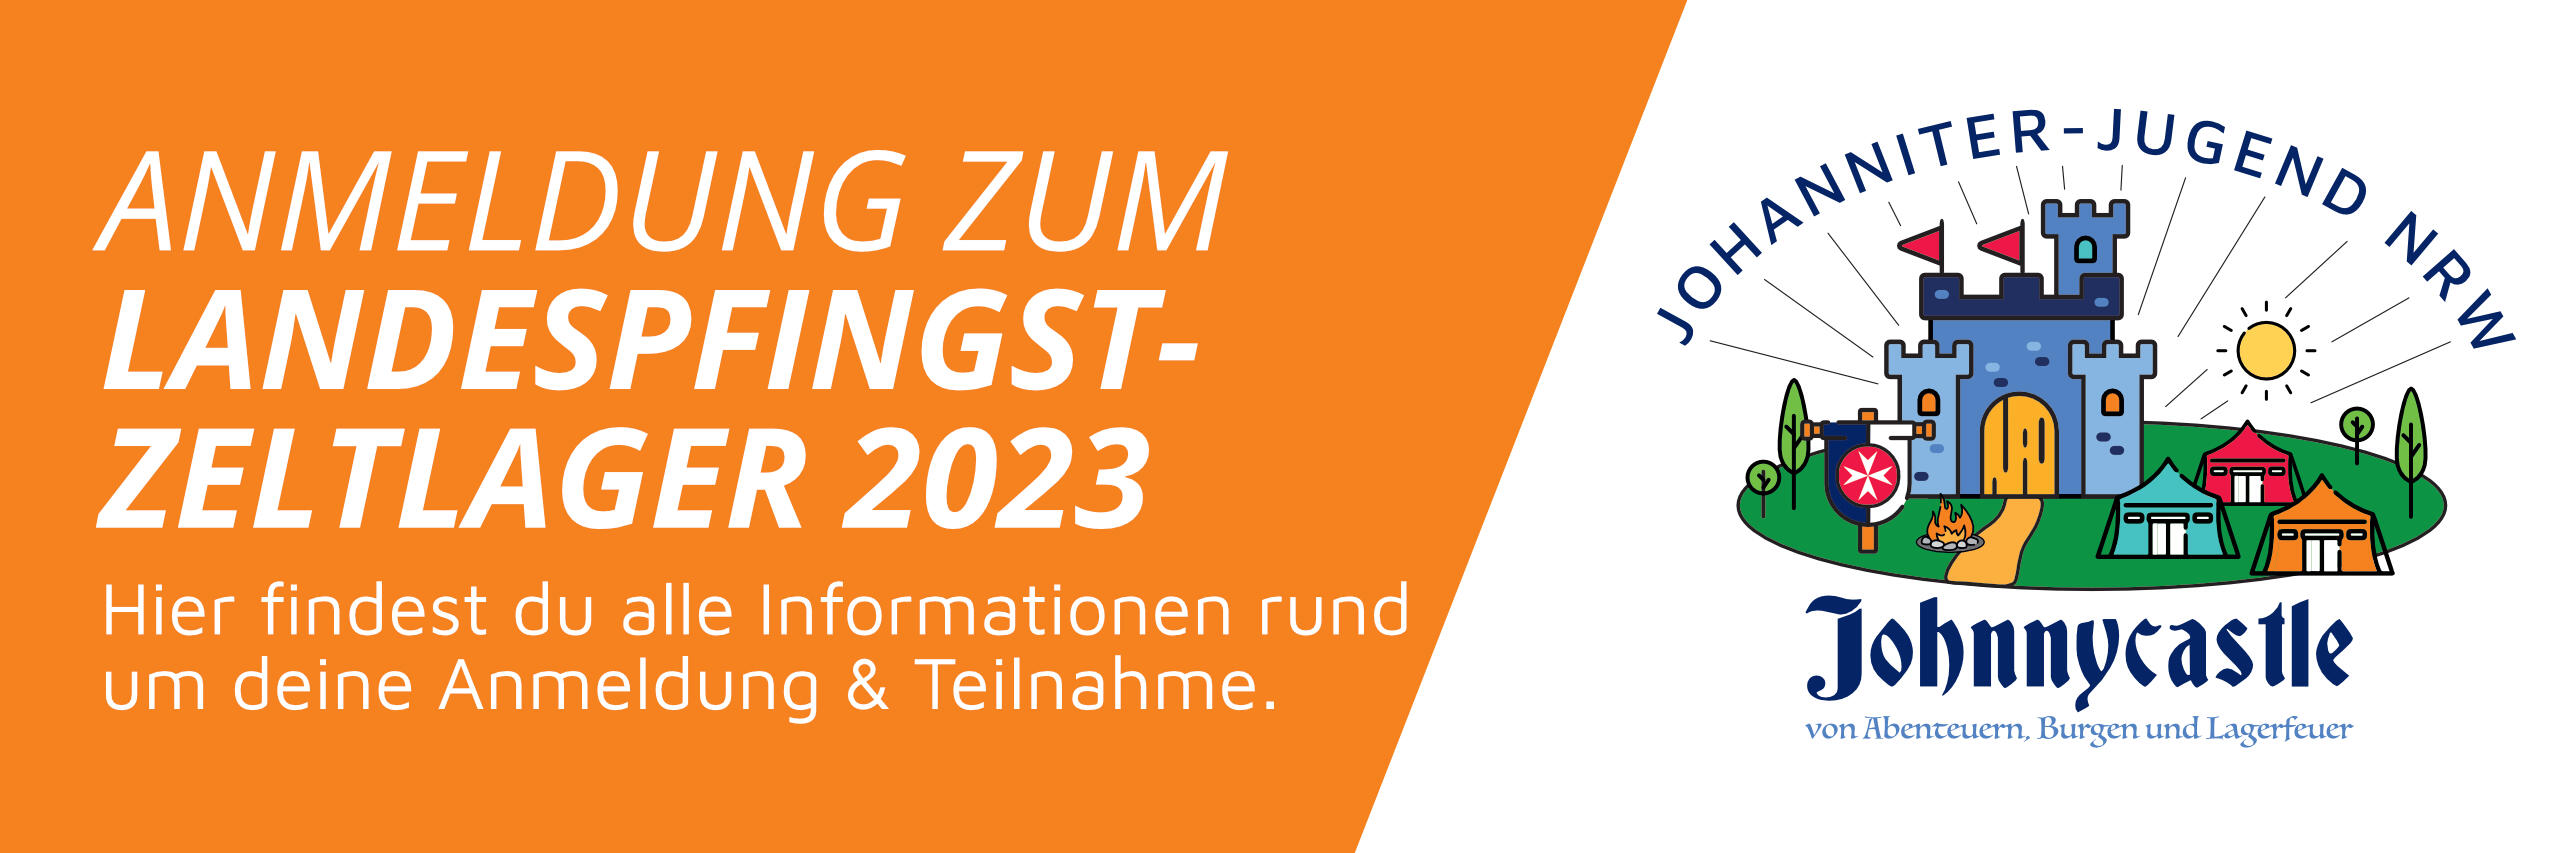 ANMELDUNG ZUM LANDESPFINGST-ZELTLAGER 2023. Hier findest du alle Informationen rund um deine Anmeldung & Teilnahme.